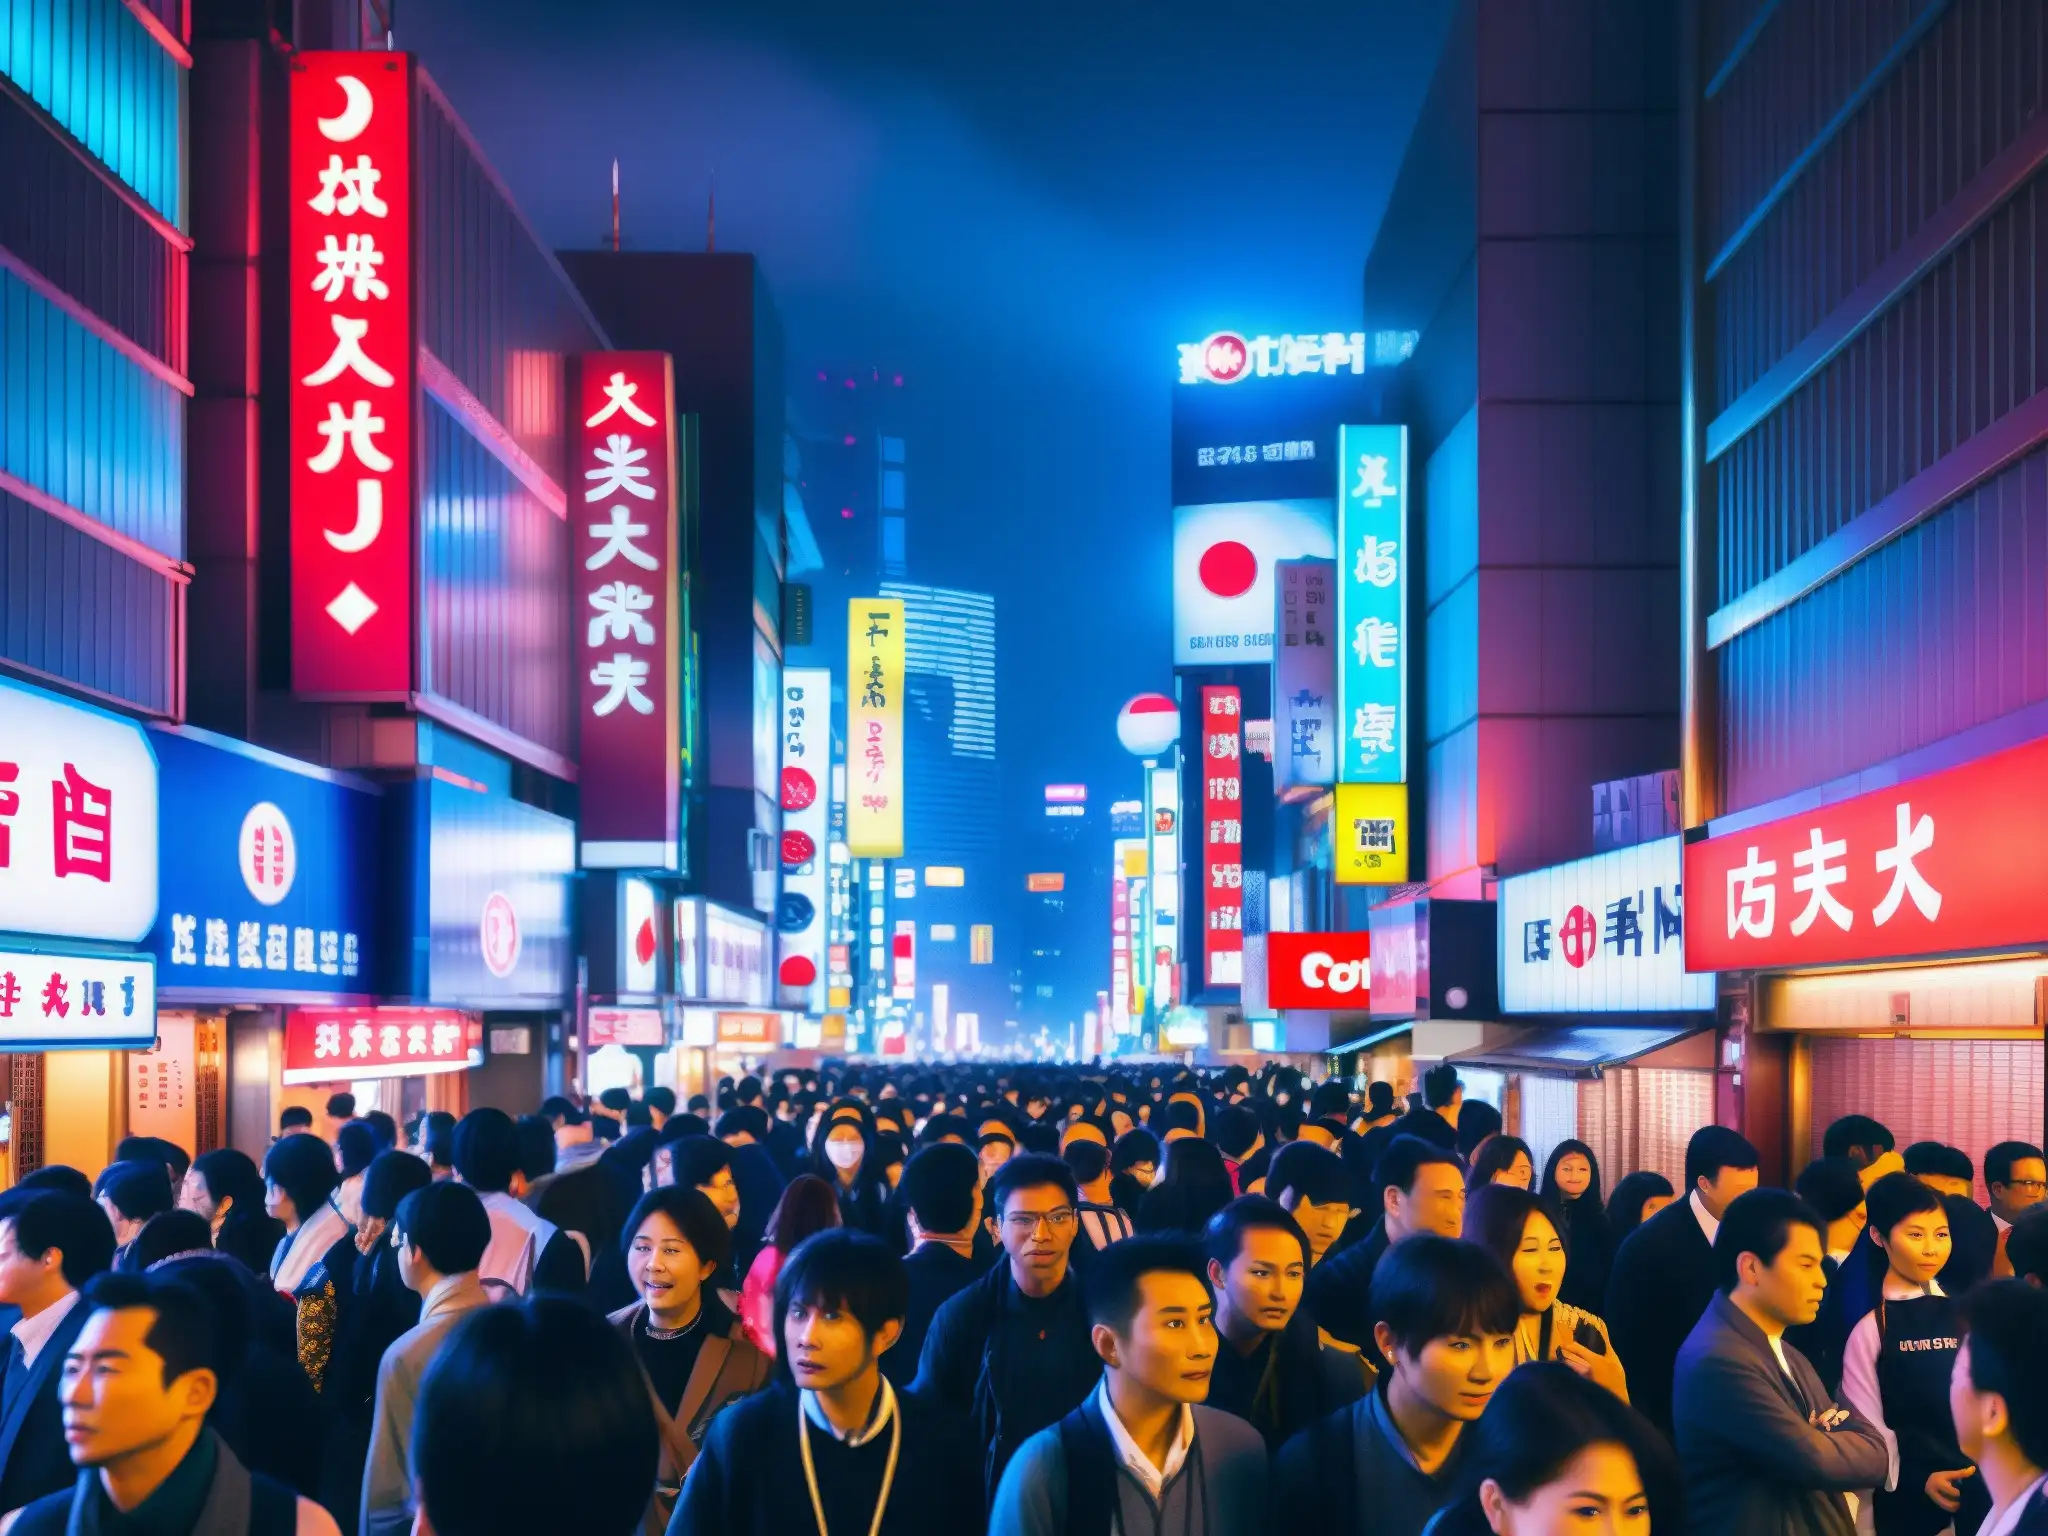 Vibrante calle de Tokio de noche, con neón y multitud, mezcla de tradición y modernidad, capturando la atmósfera misteriosa de Japón urbano